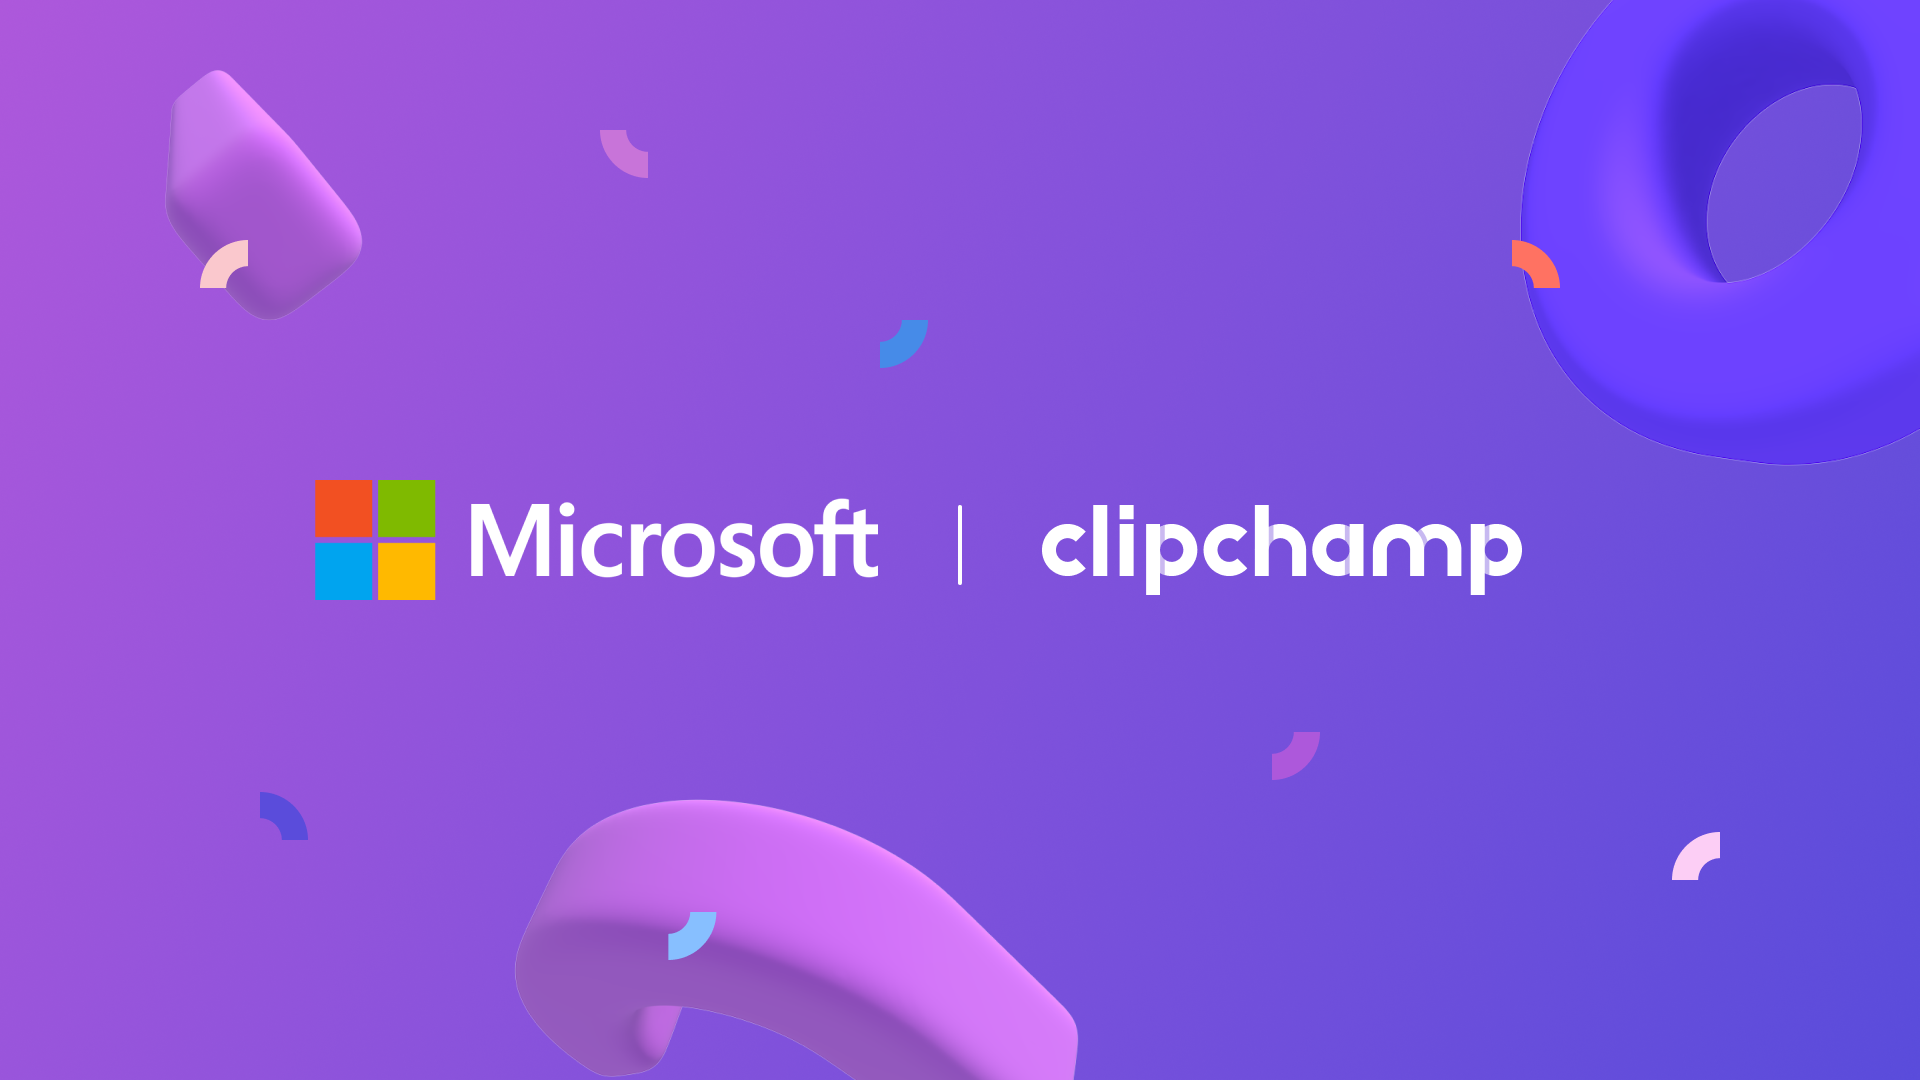 alt="Clipchamp x Microsoft"